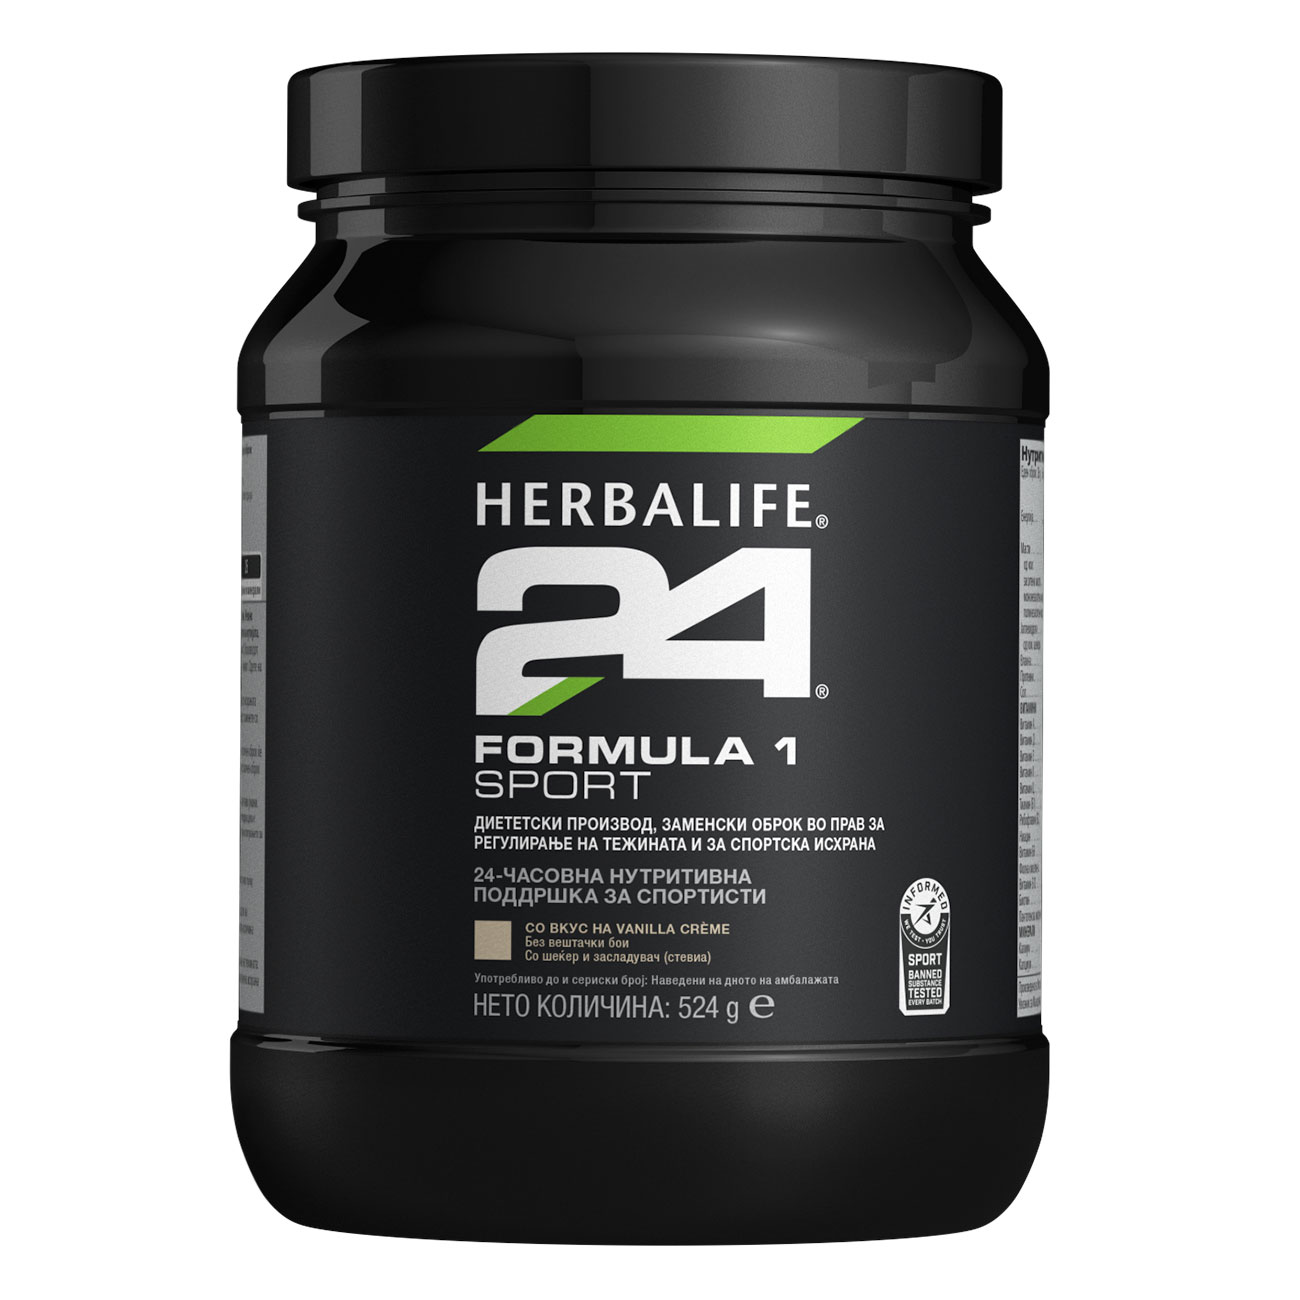 Herbalife24® Formula 1 Sport Диететски производ, заменски оброк во прав за регулирање на тежината и за спортска исхрана со вкус на Vanilla Crème слика на производот